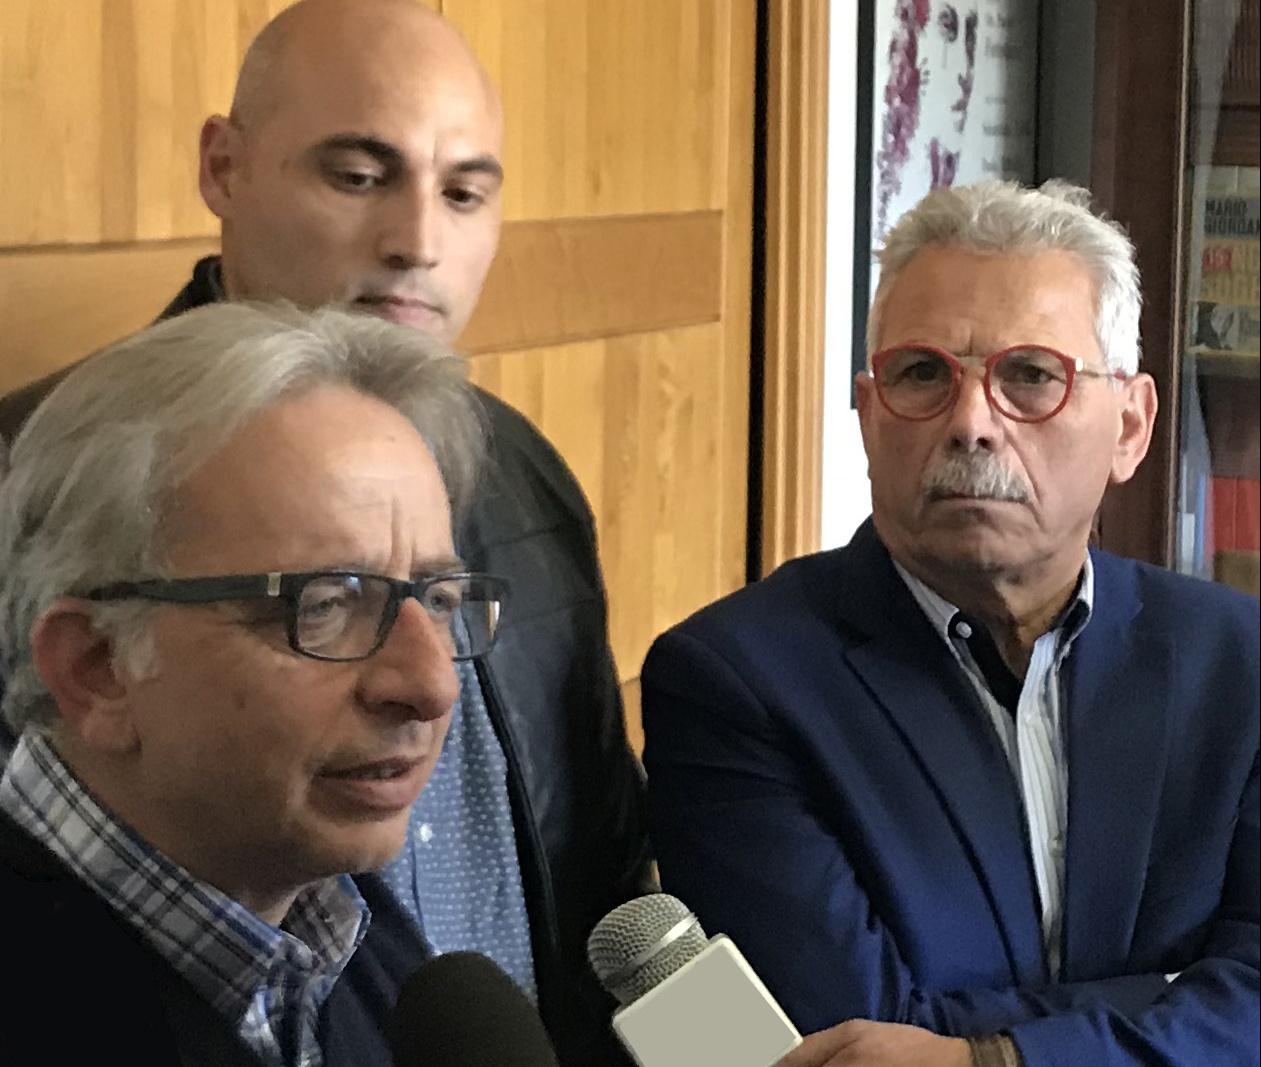 VINCIULLO-BASILE-SALERNO – Siracusa: via Piave condannata al fallimento a causa dell’incapacità dell’Amministrazione Comunale